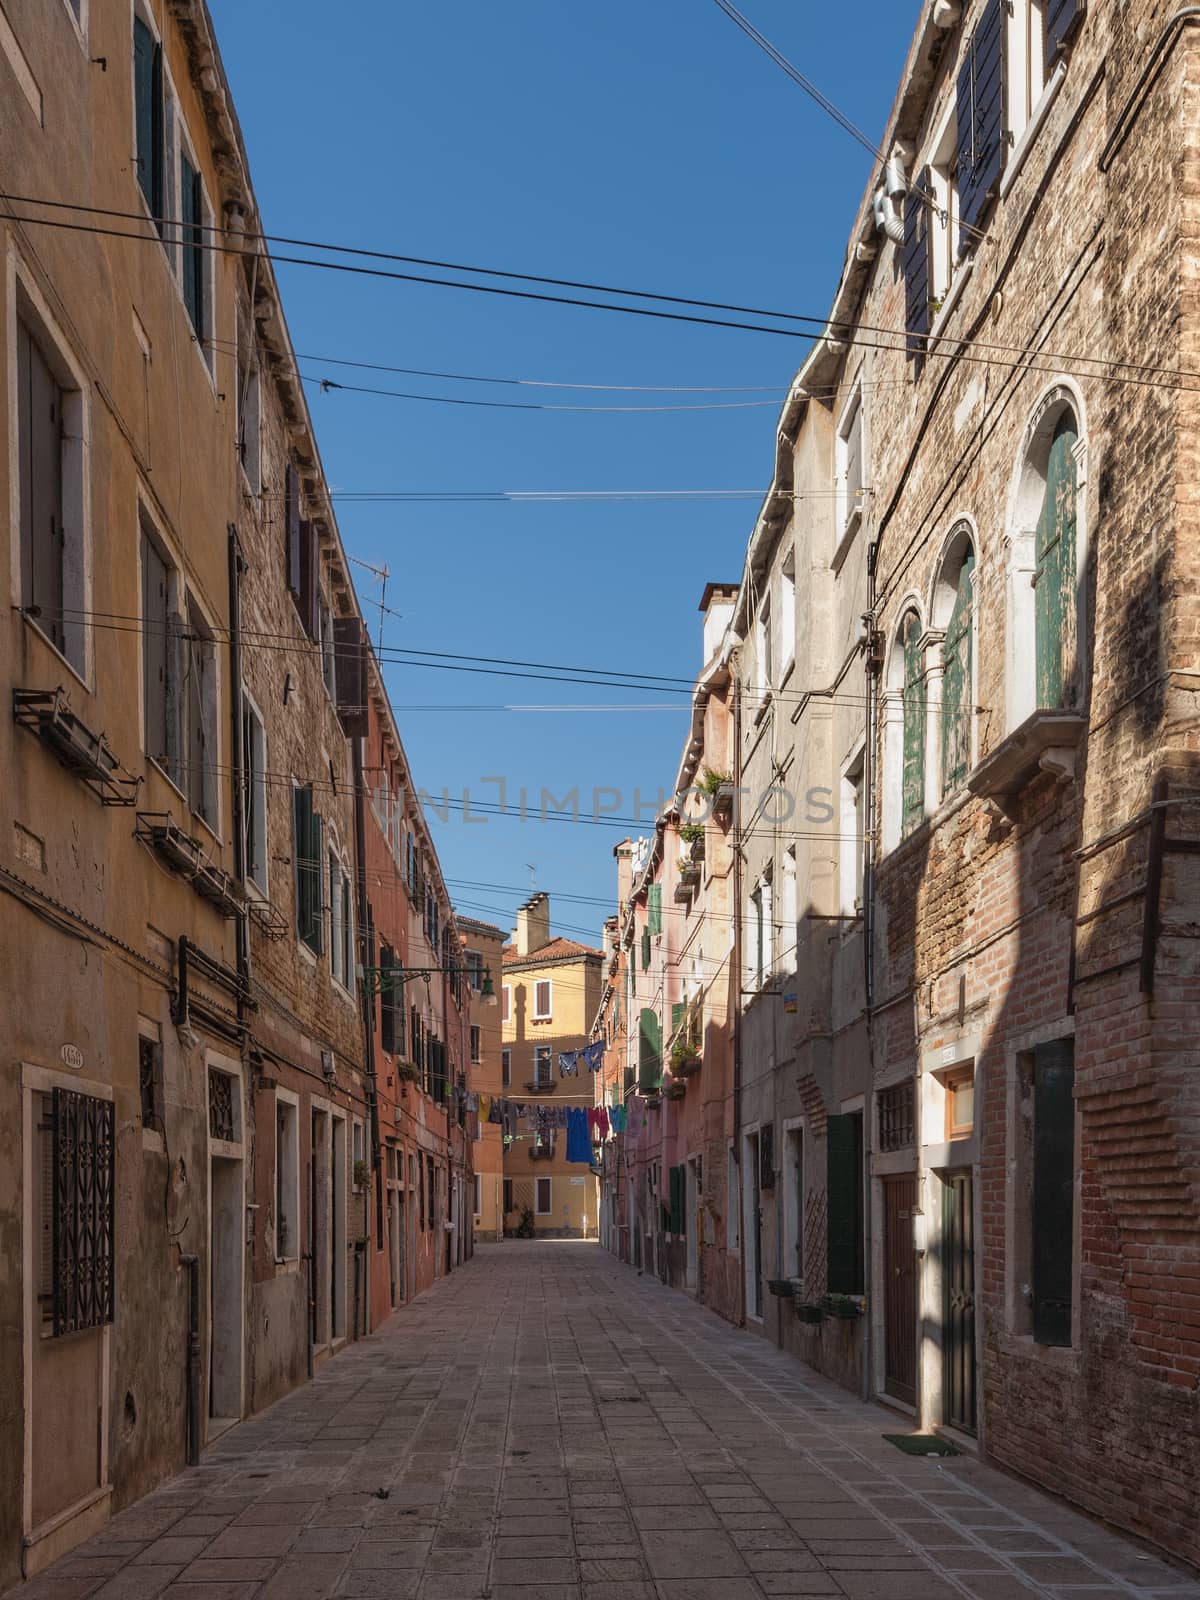 Street of Venezia by mot1963